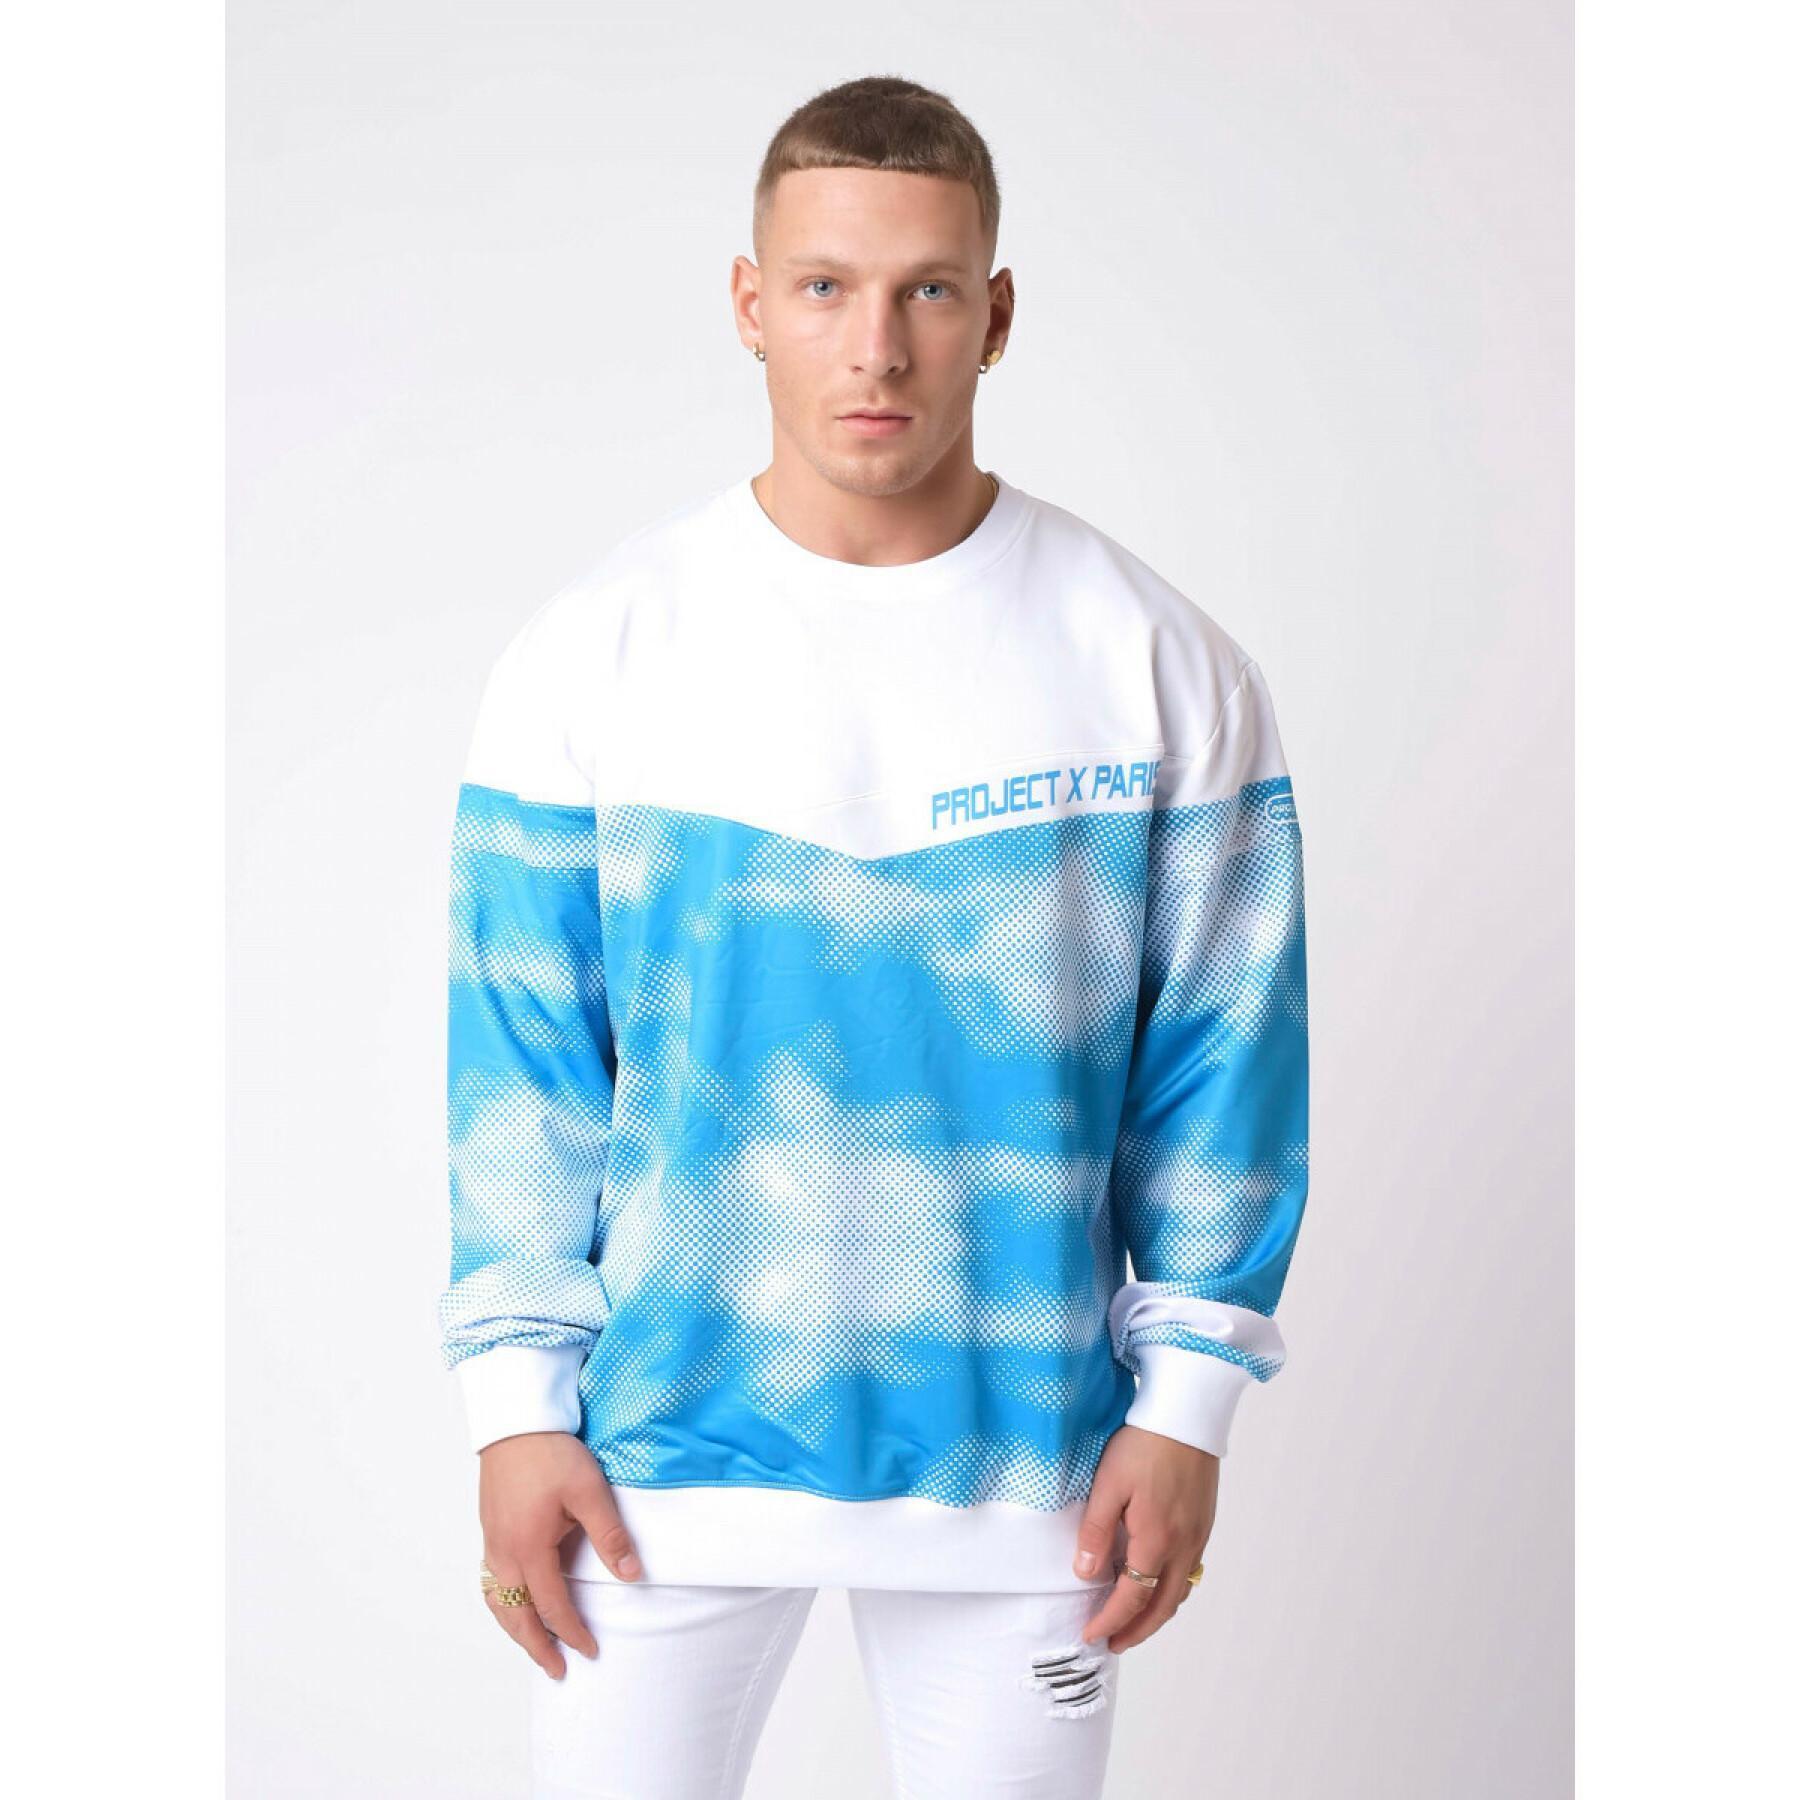 Wolkenprint sweatshirt met ronde hals Project X Paris